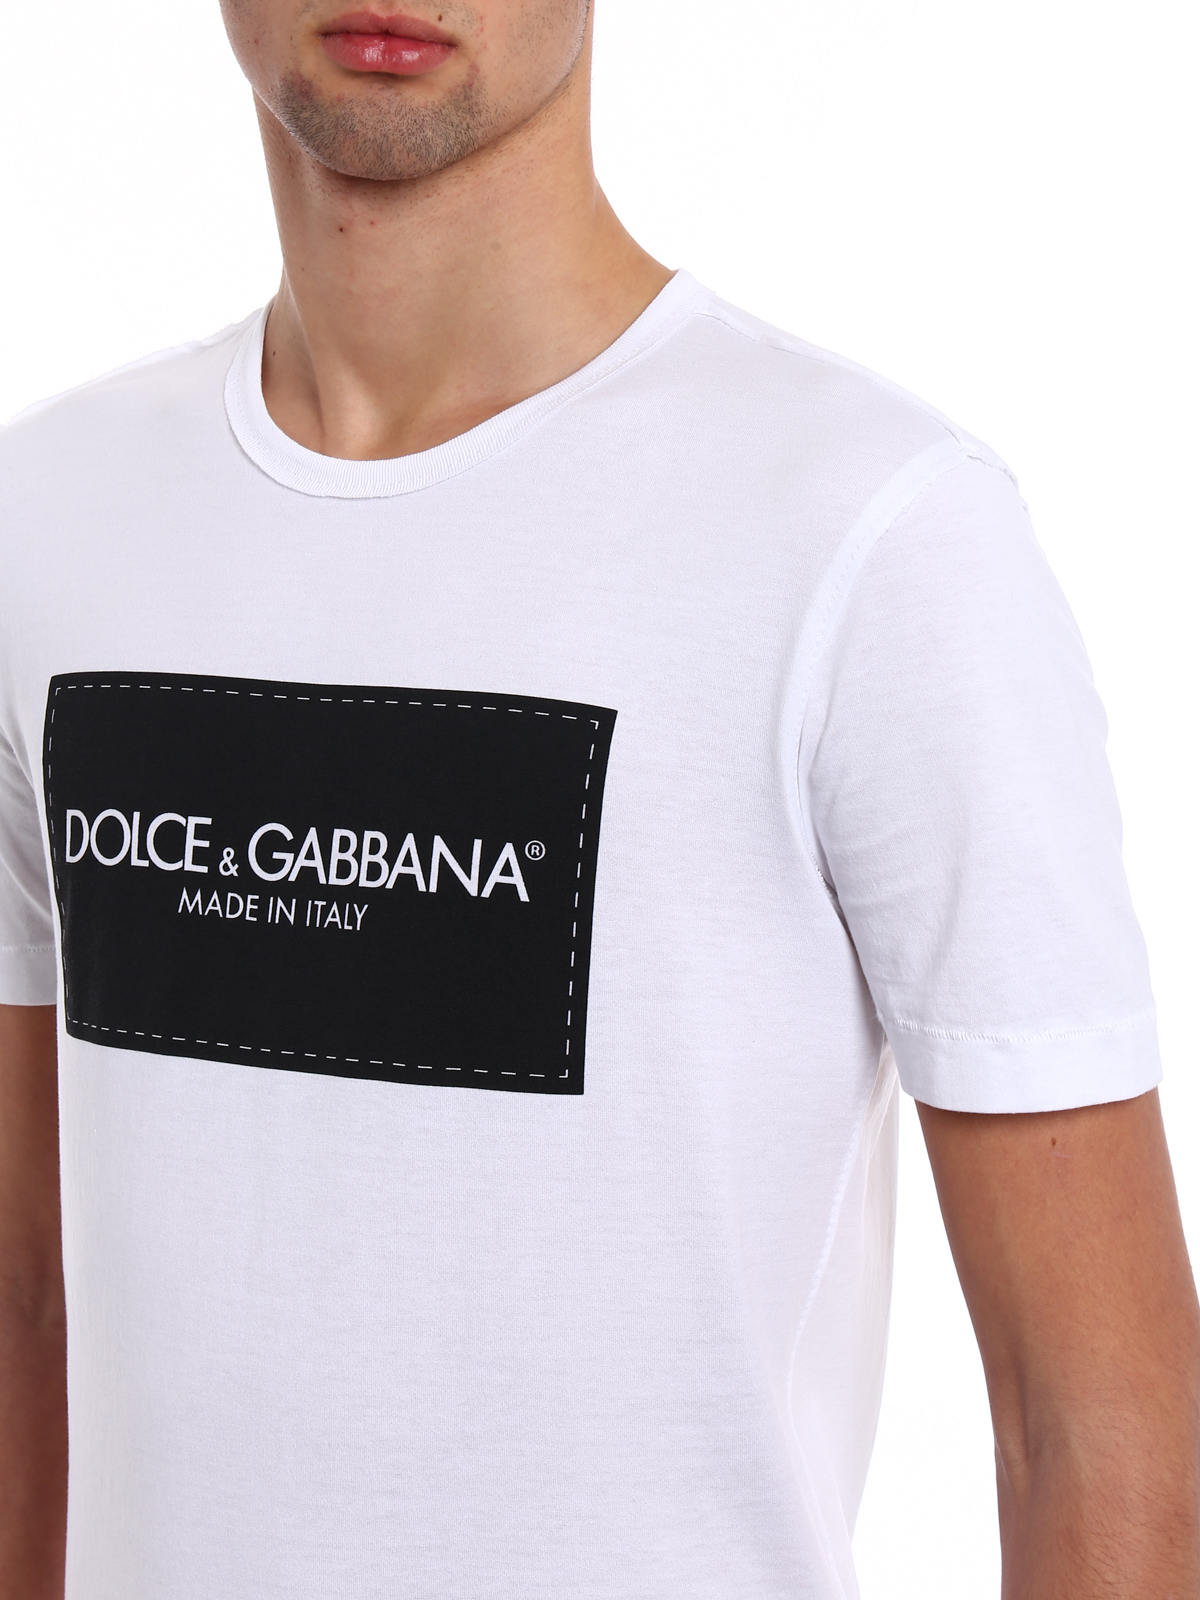 dolce and gabbana t shirt